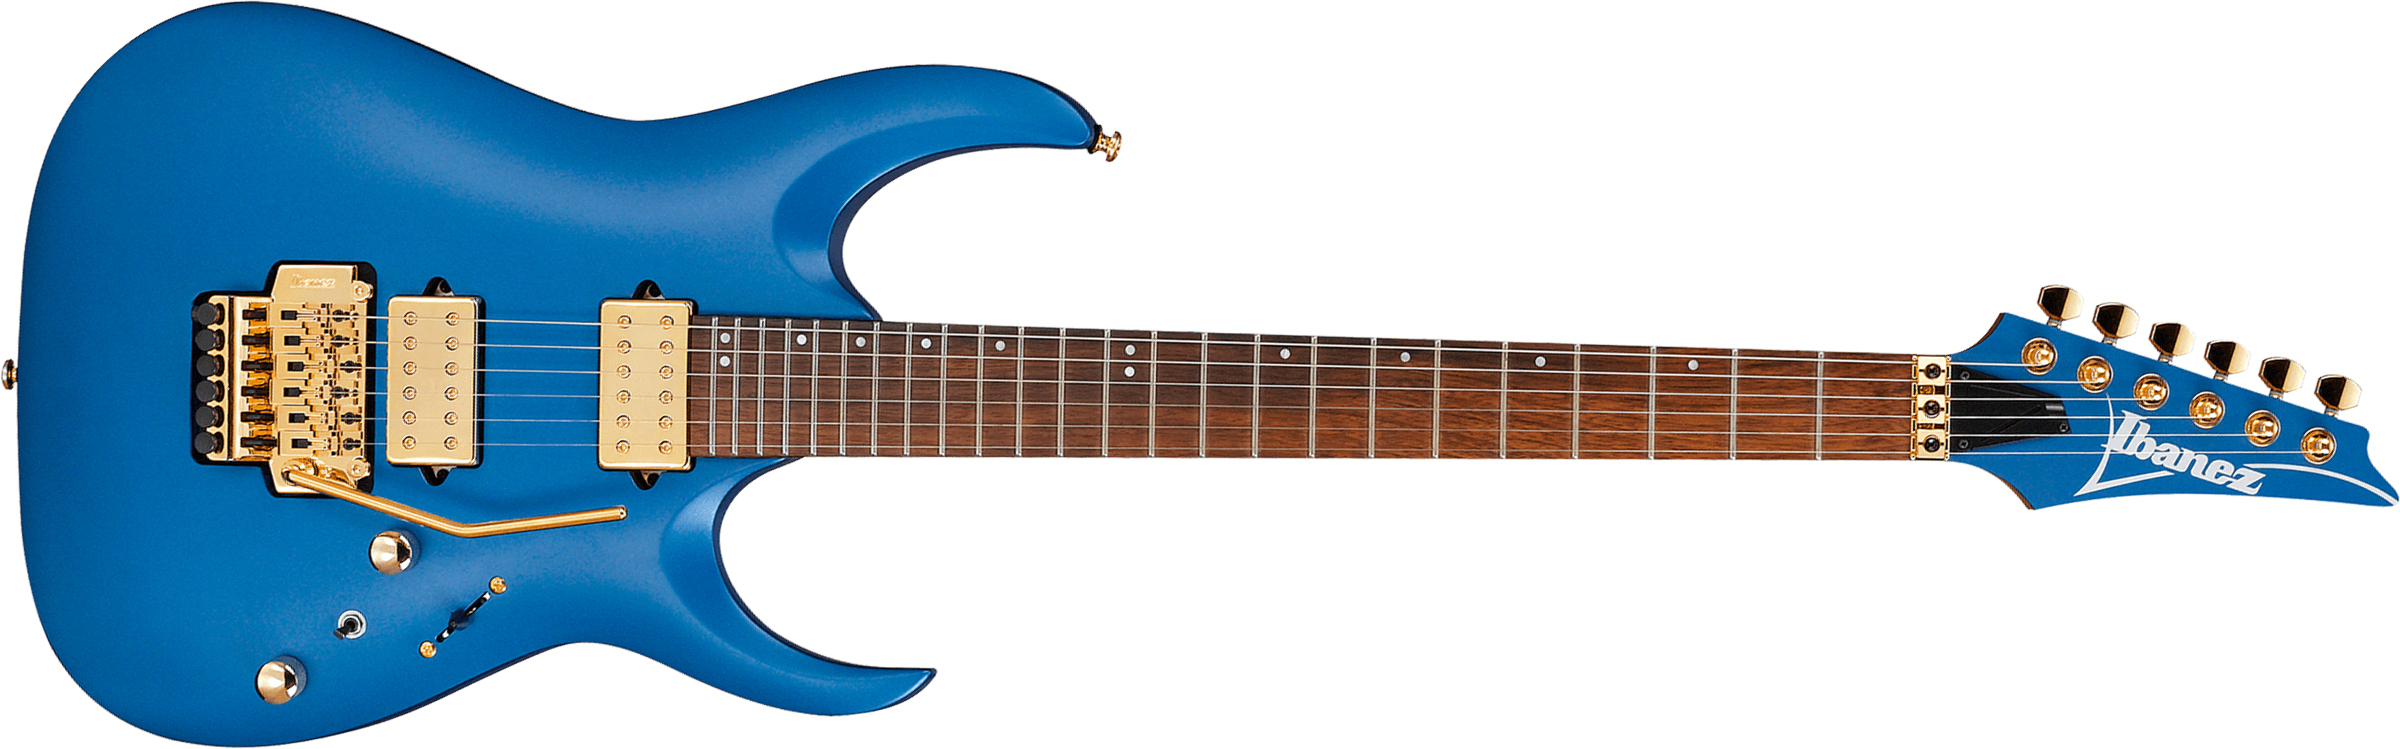 Ibanez Rga42hpt Lbm Standard  Hh Fr Jat - Laser Blue Matte - Guitarra eléctrica con forma de str. - Main picture